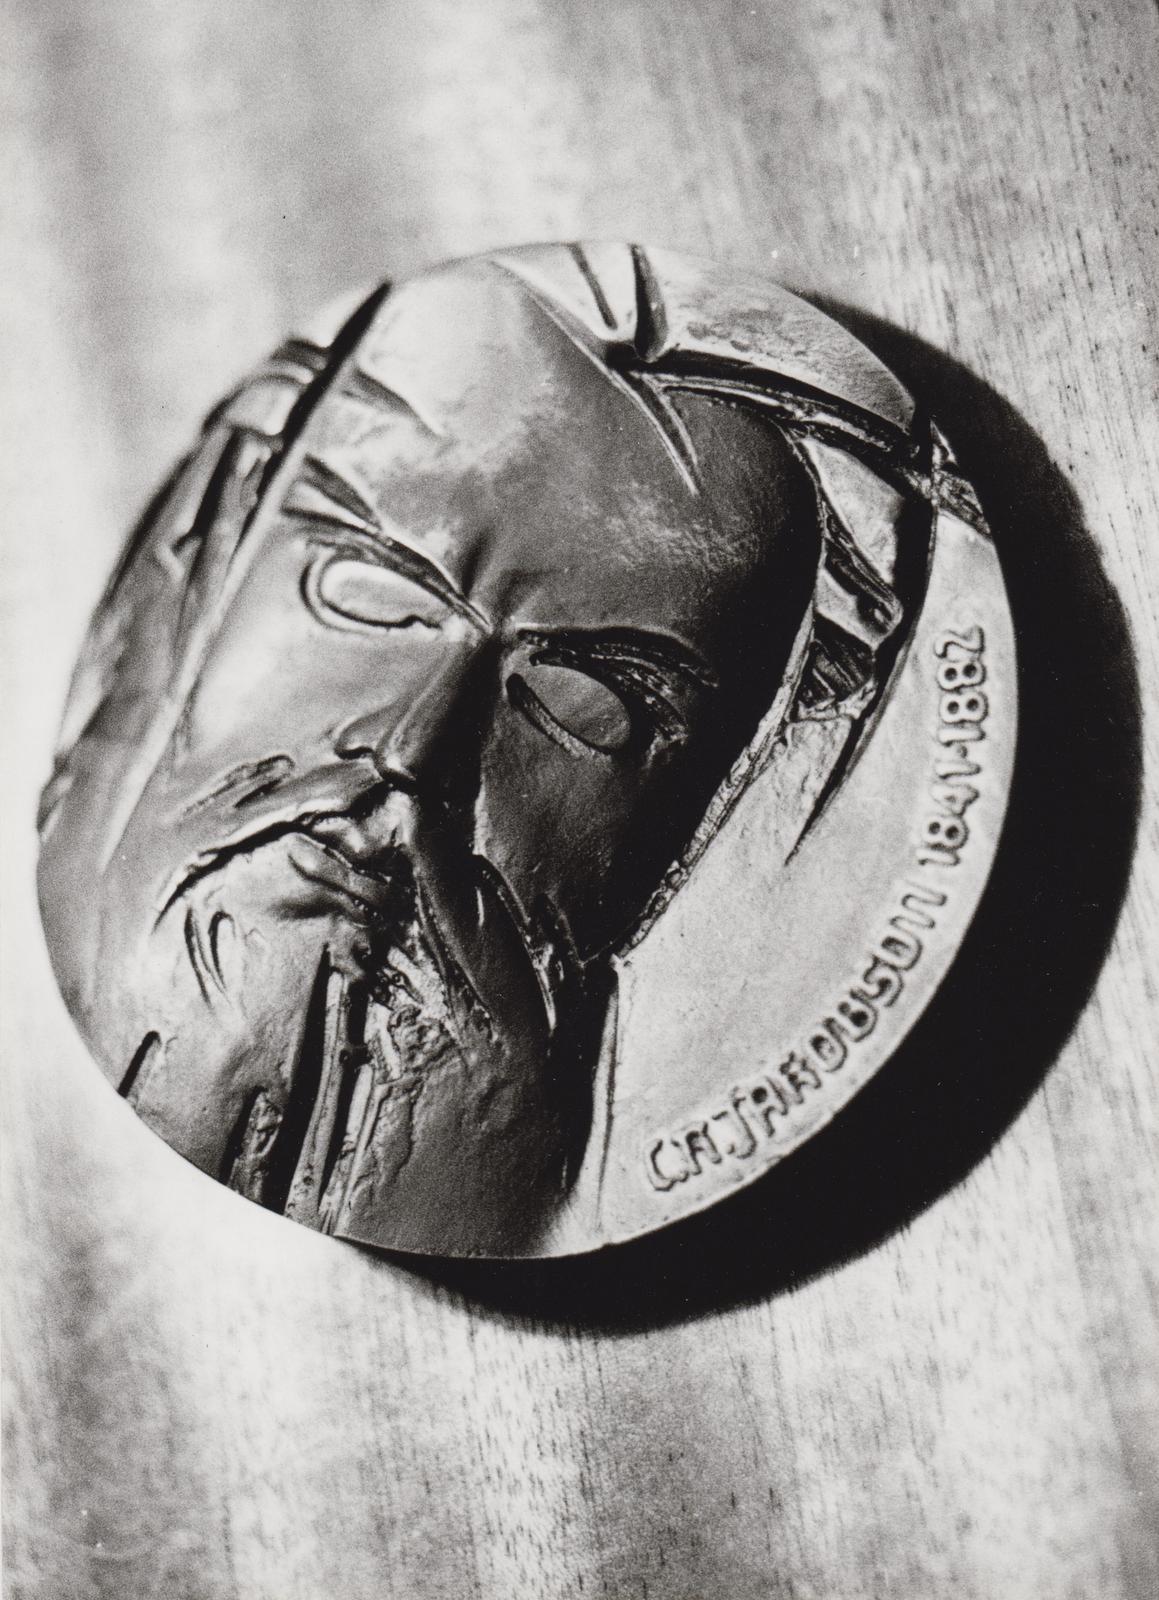 C. R. Jakobsoni nimelise medali üleandmine Joh. Juhansoole ja Manivald Metsaaltile Kurgja muuseumis 12.01.1990.